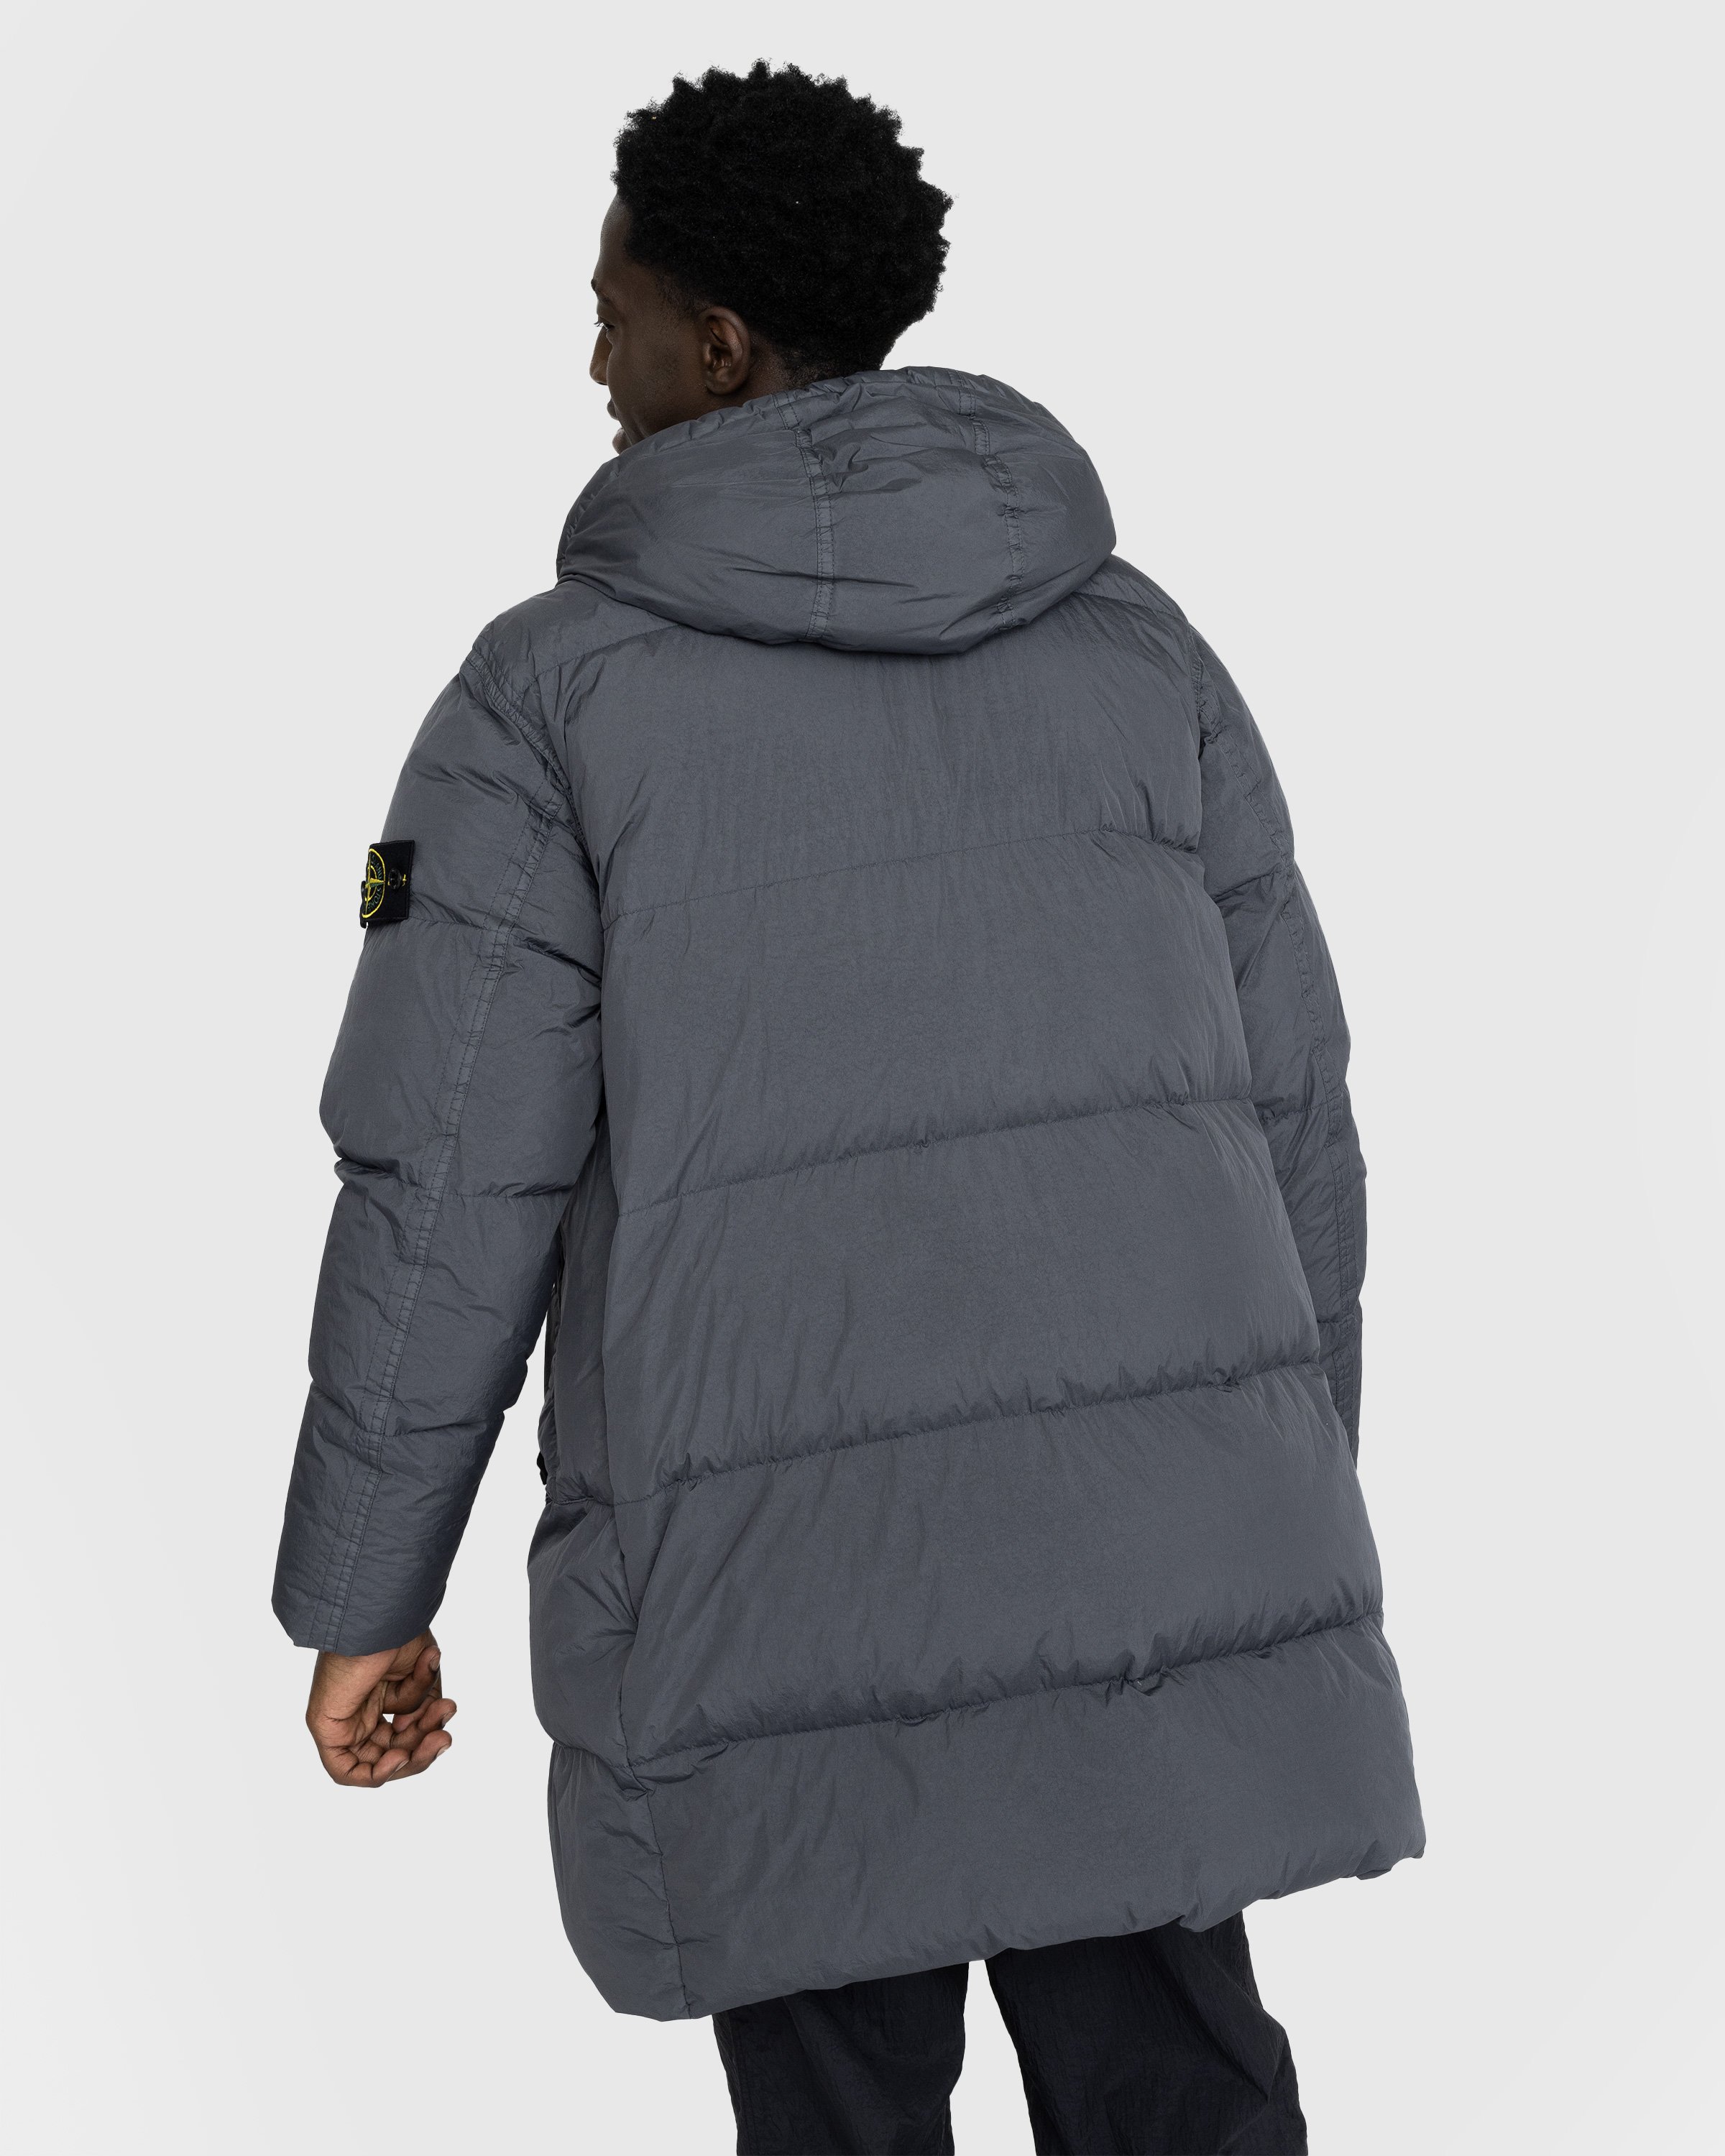 Stone Island - Garment-Dyed Long Jacket Lead Grey - Clothing - Grey - Image 3